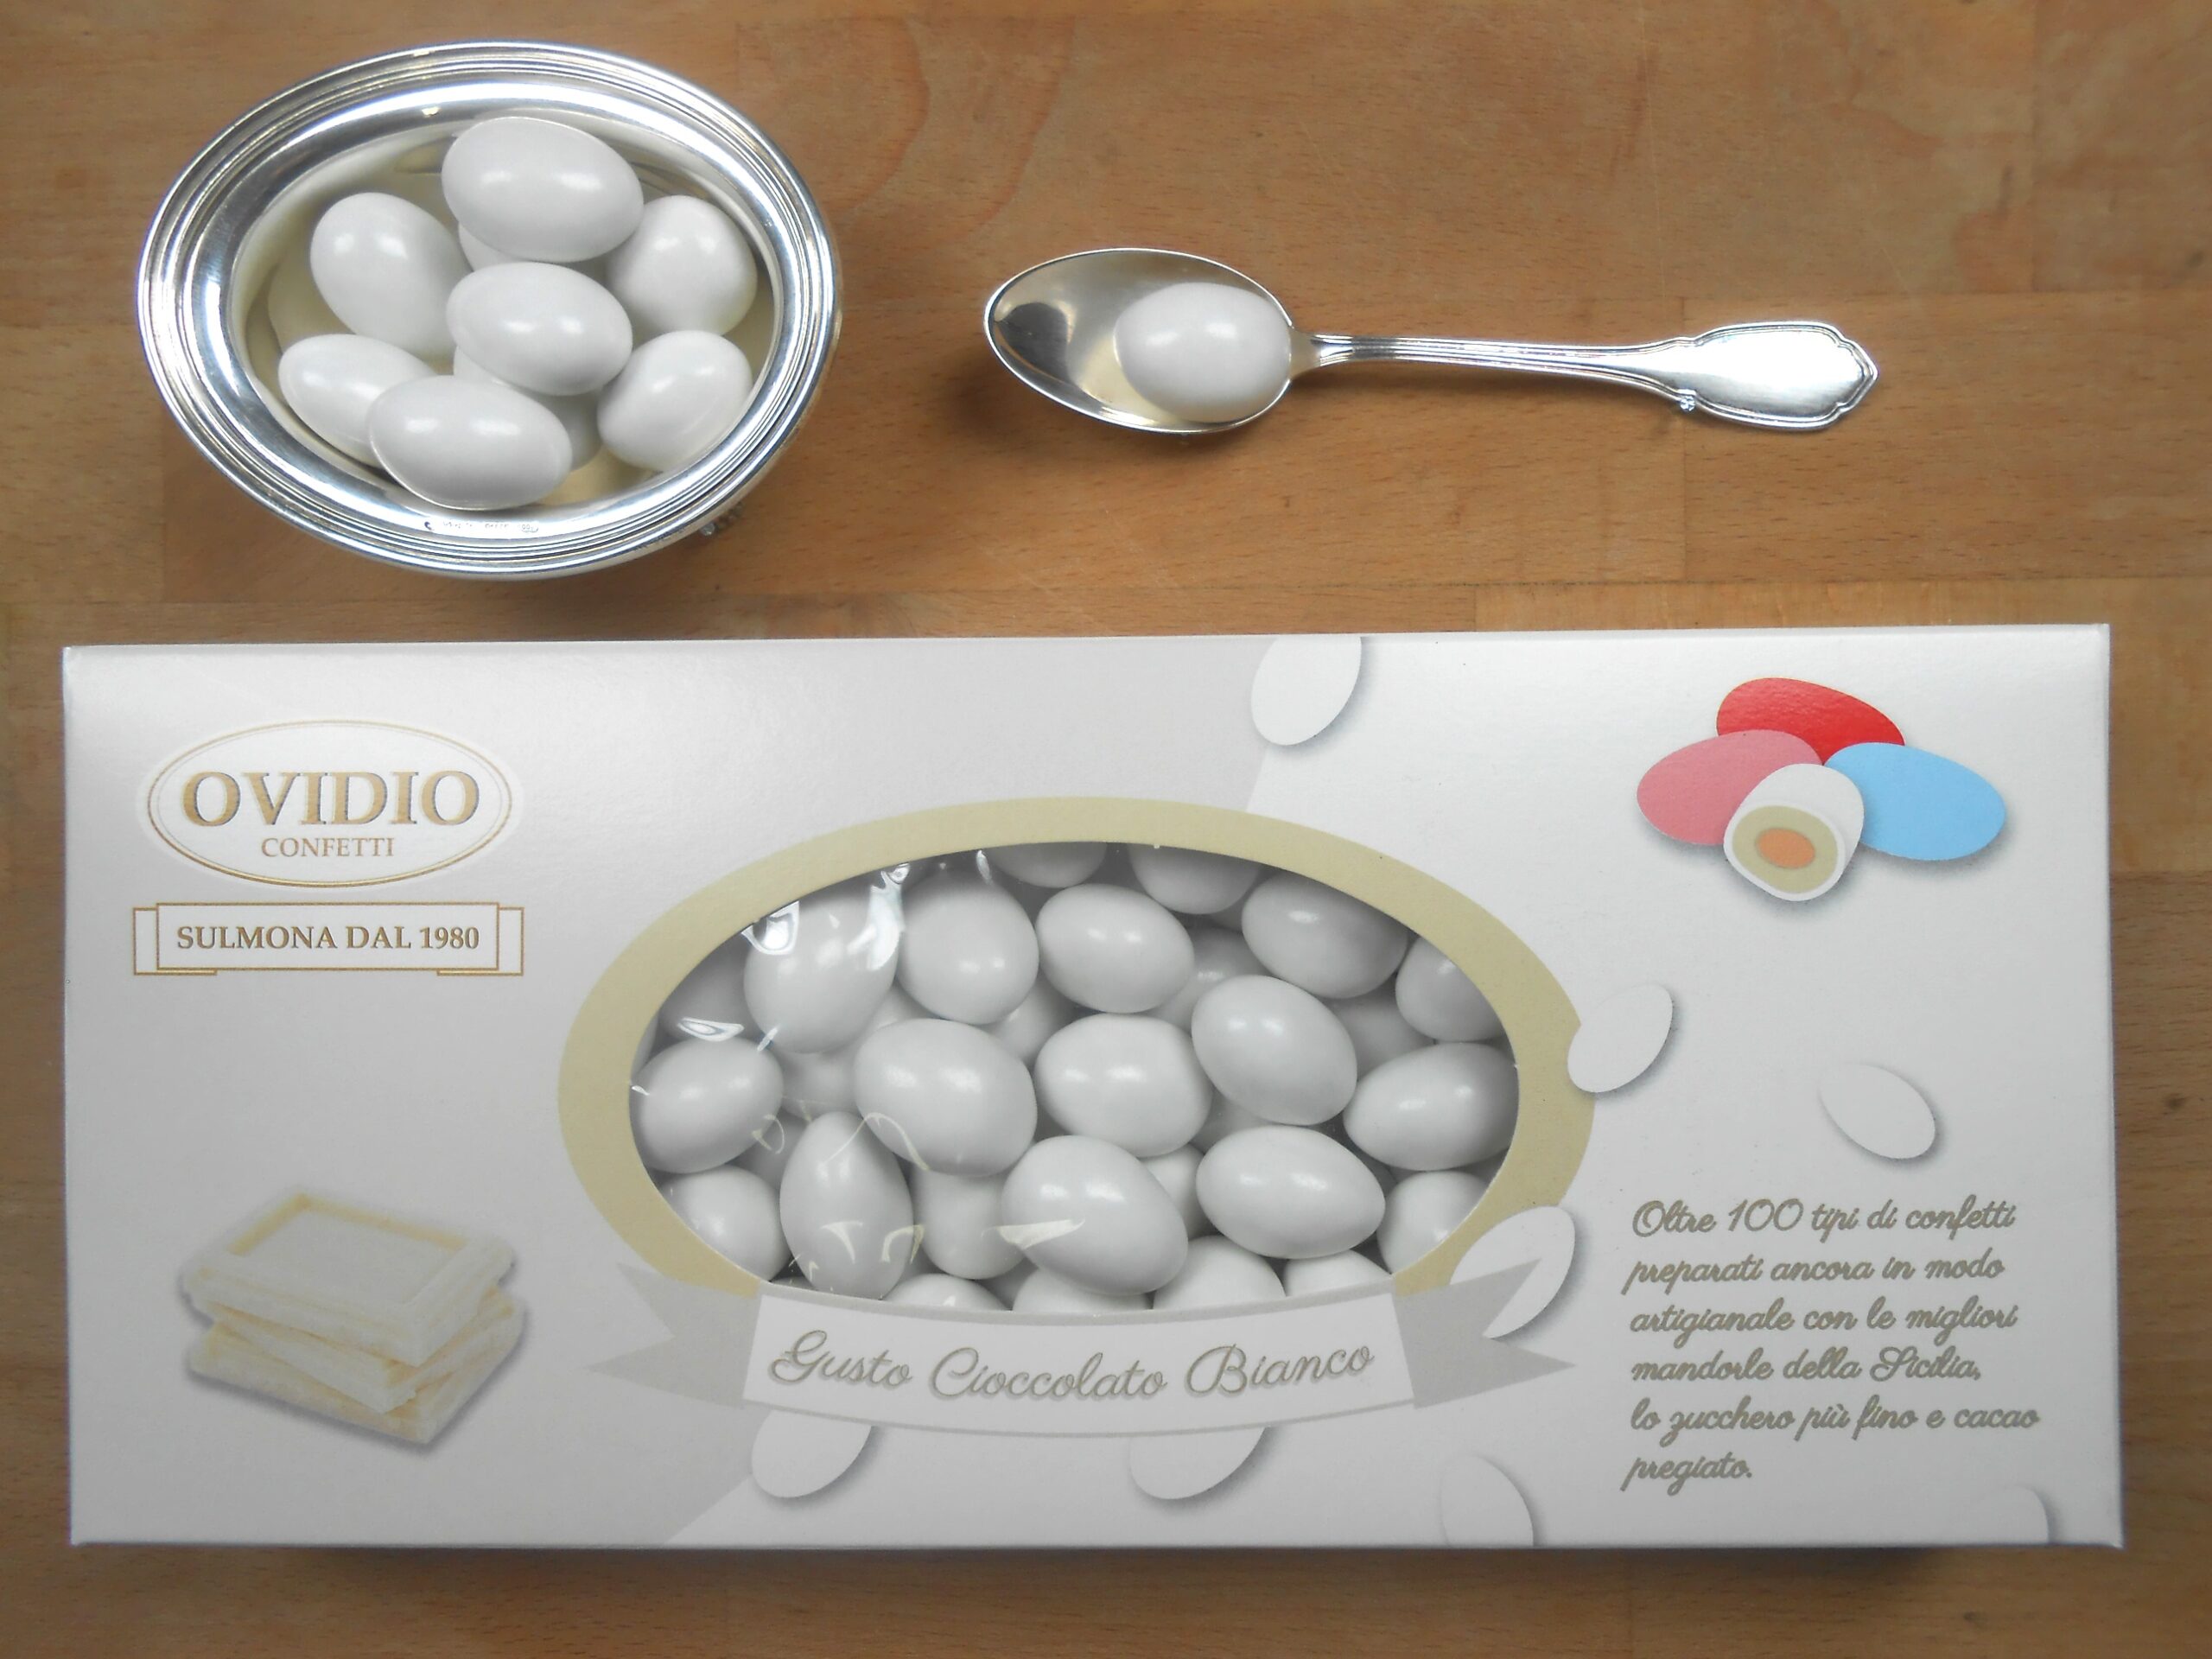 Confetti di Sulmona - Ciocomandorla Bianco, doppio cioccolato - 1000 gr